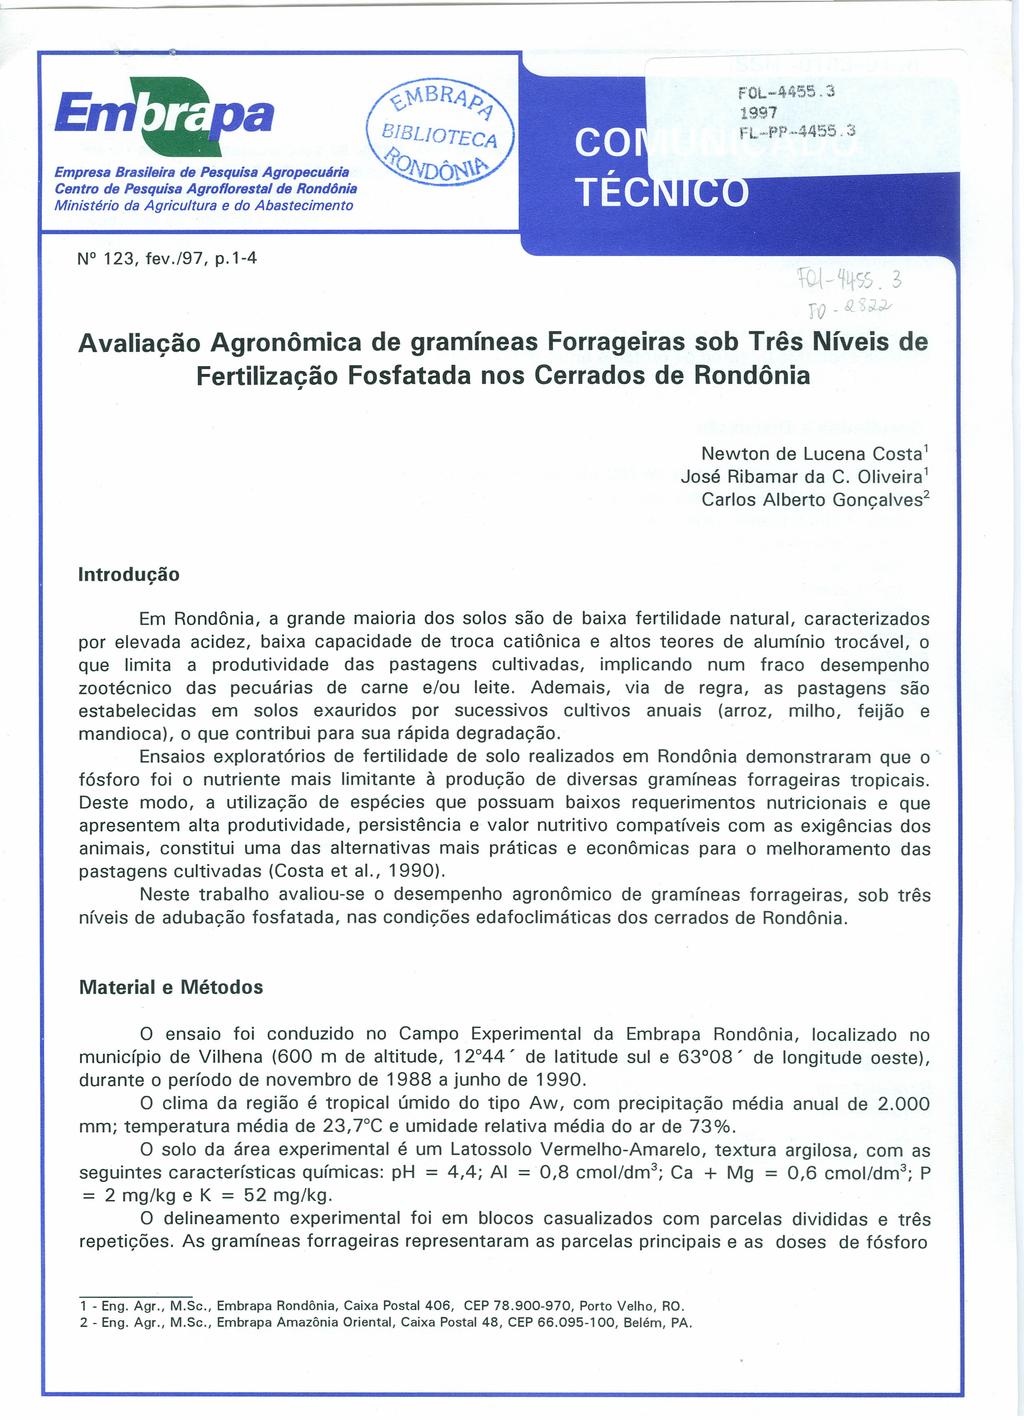 FOL-4455.3 1997 rl-pp 44~j5.:';i. Empresa Brasileira de Pesquisa Agropecuária Centro de Pesquisa Agroflorestal de Rondônia Ministério da Agricultura e do Abastecimento N 123, fev./97, p.1-4 tct- ~~SS.